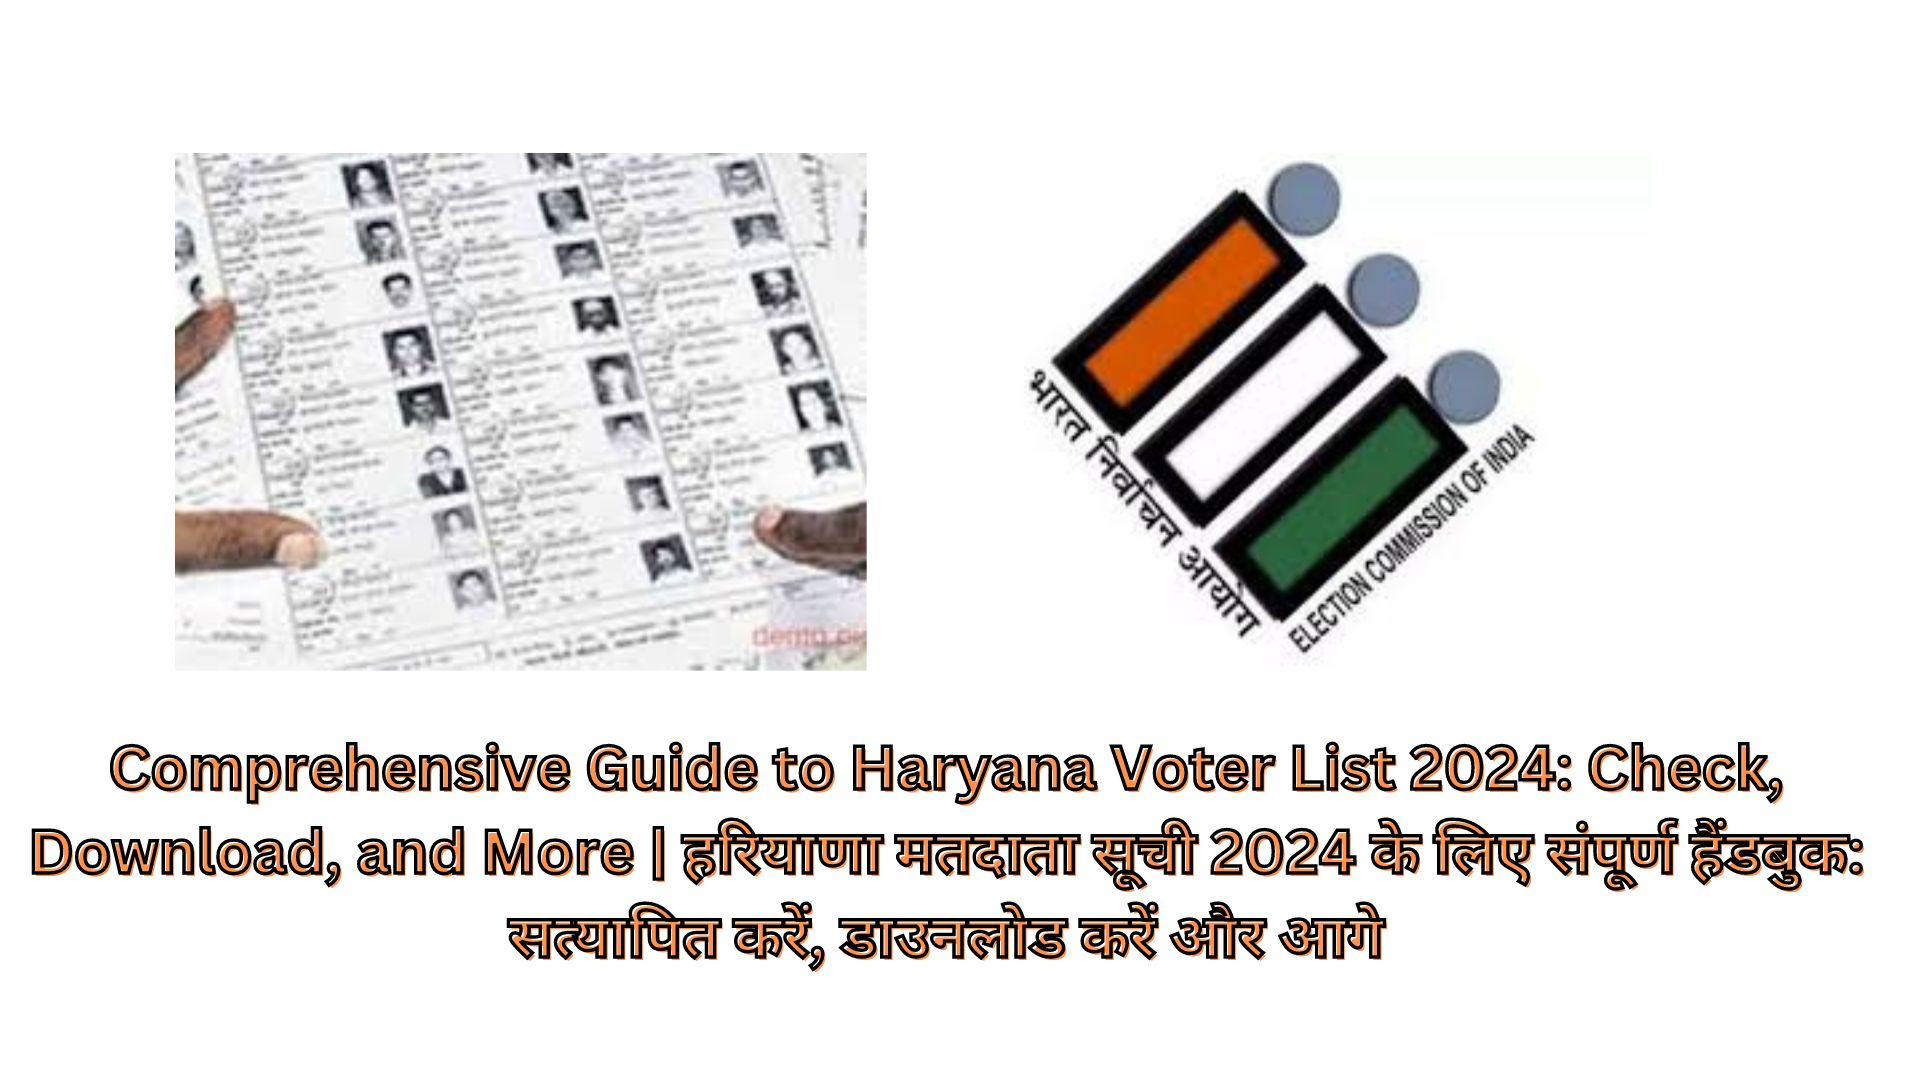 Comprehensive Guide to Haryana Voter List 2024: Check, Download, and More | हरियाणा मतदाता सूची 2024 के लिए संपूर्ण हैंडबुक: सत्यापित करें, डाउनलोड करें और आगे